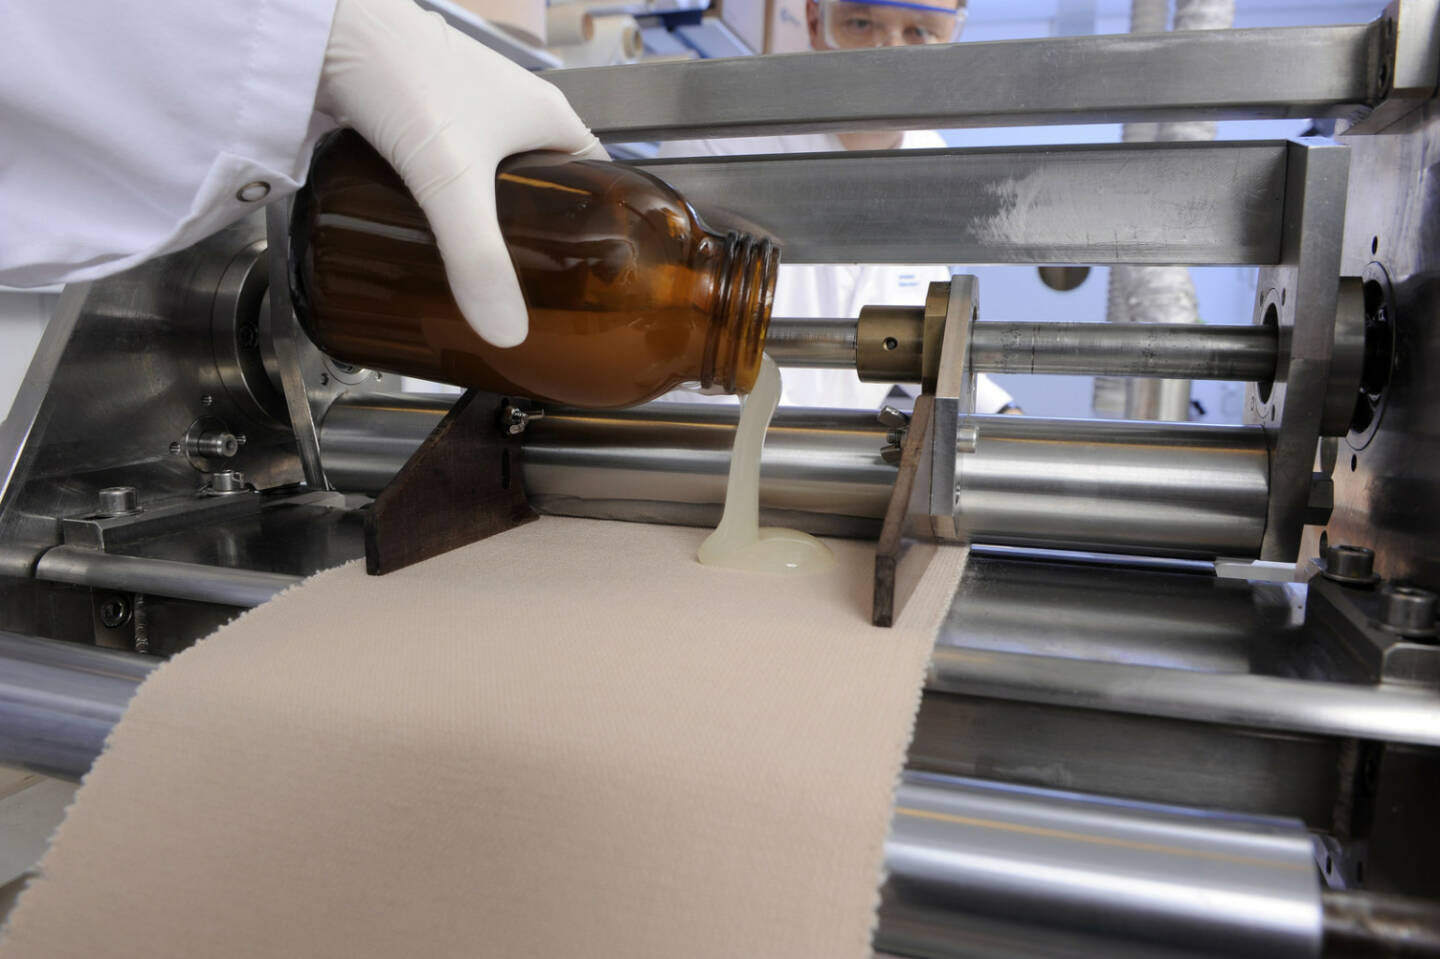 Herstellung eines Pflasters im Labor, Beiersdorf